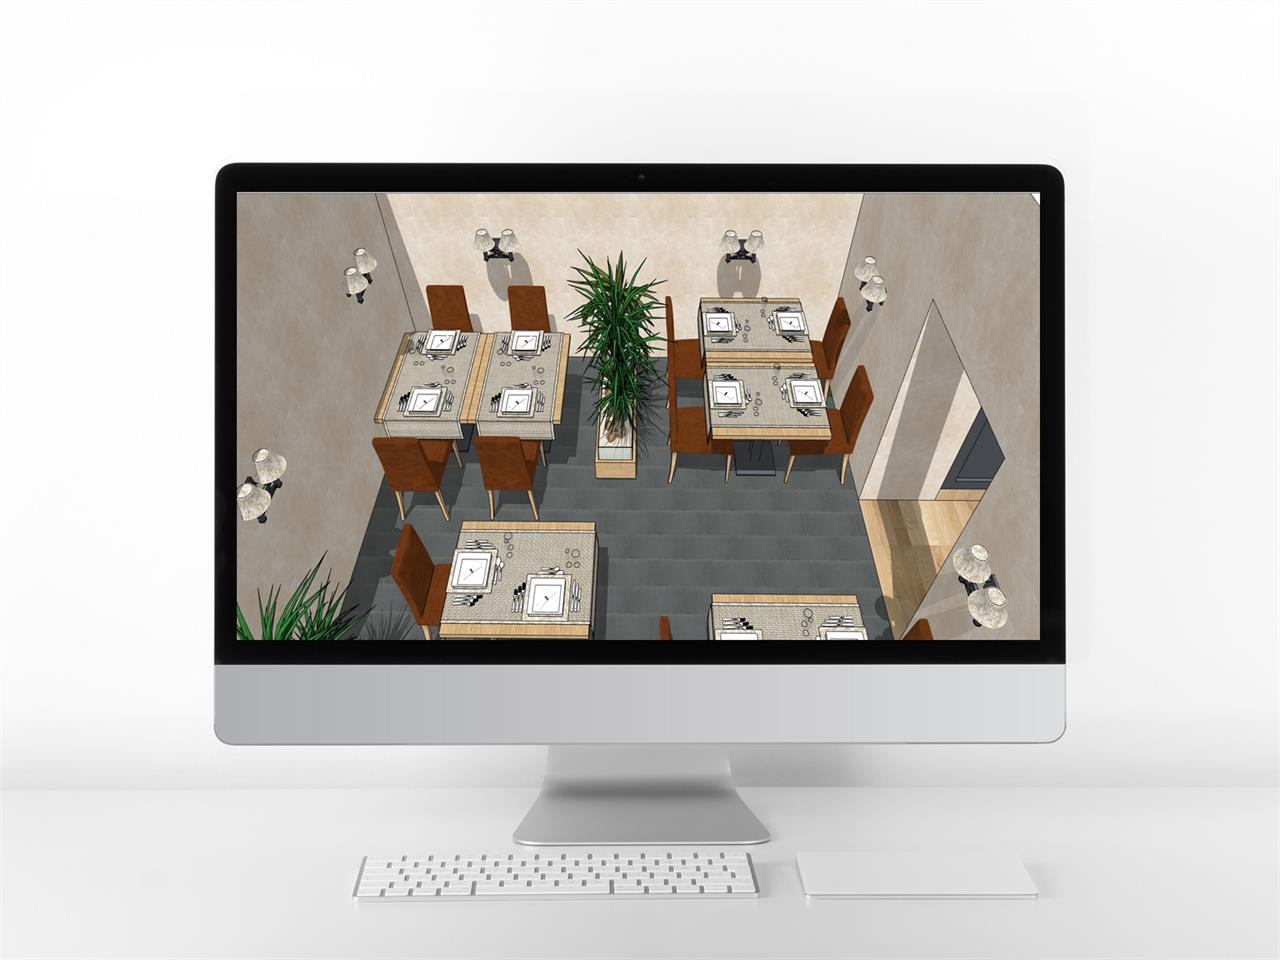 맞춤형 식당 디자인 웹툰배경 모델 사이트 미리보기